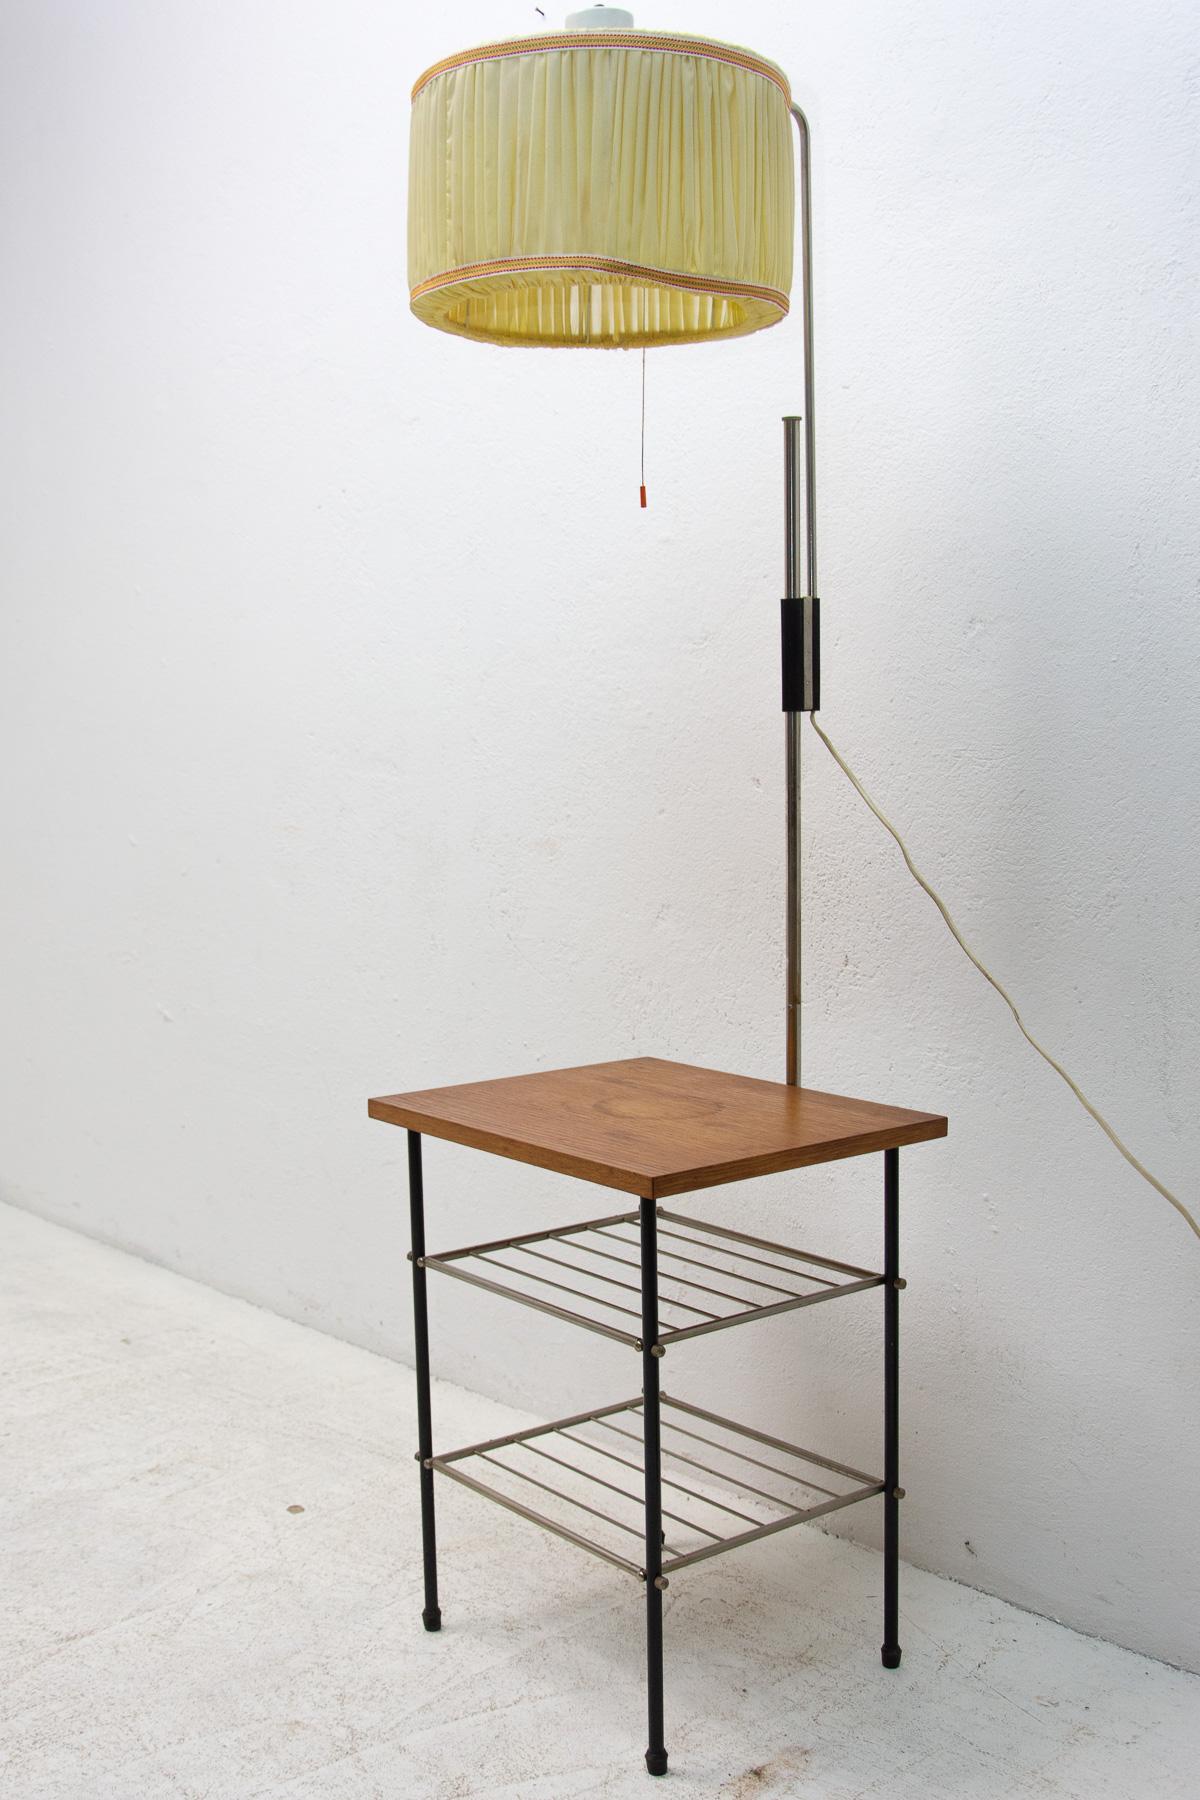 Cette lampe a été fabriquée dans les années 70 en Tchécoslovaquie. Il est fabriqué en bois de hêtre, en métal et en tissu.
Dans l'ensemble, il est en bon état, bien fonctionnel. Seule la planche supérieure en bois porte les marques de l'âge et de